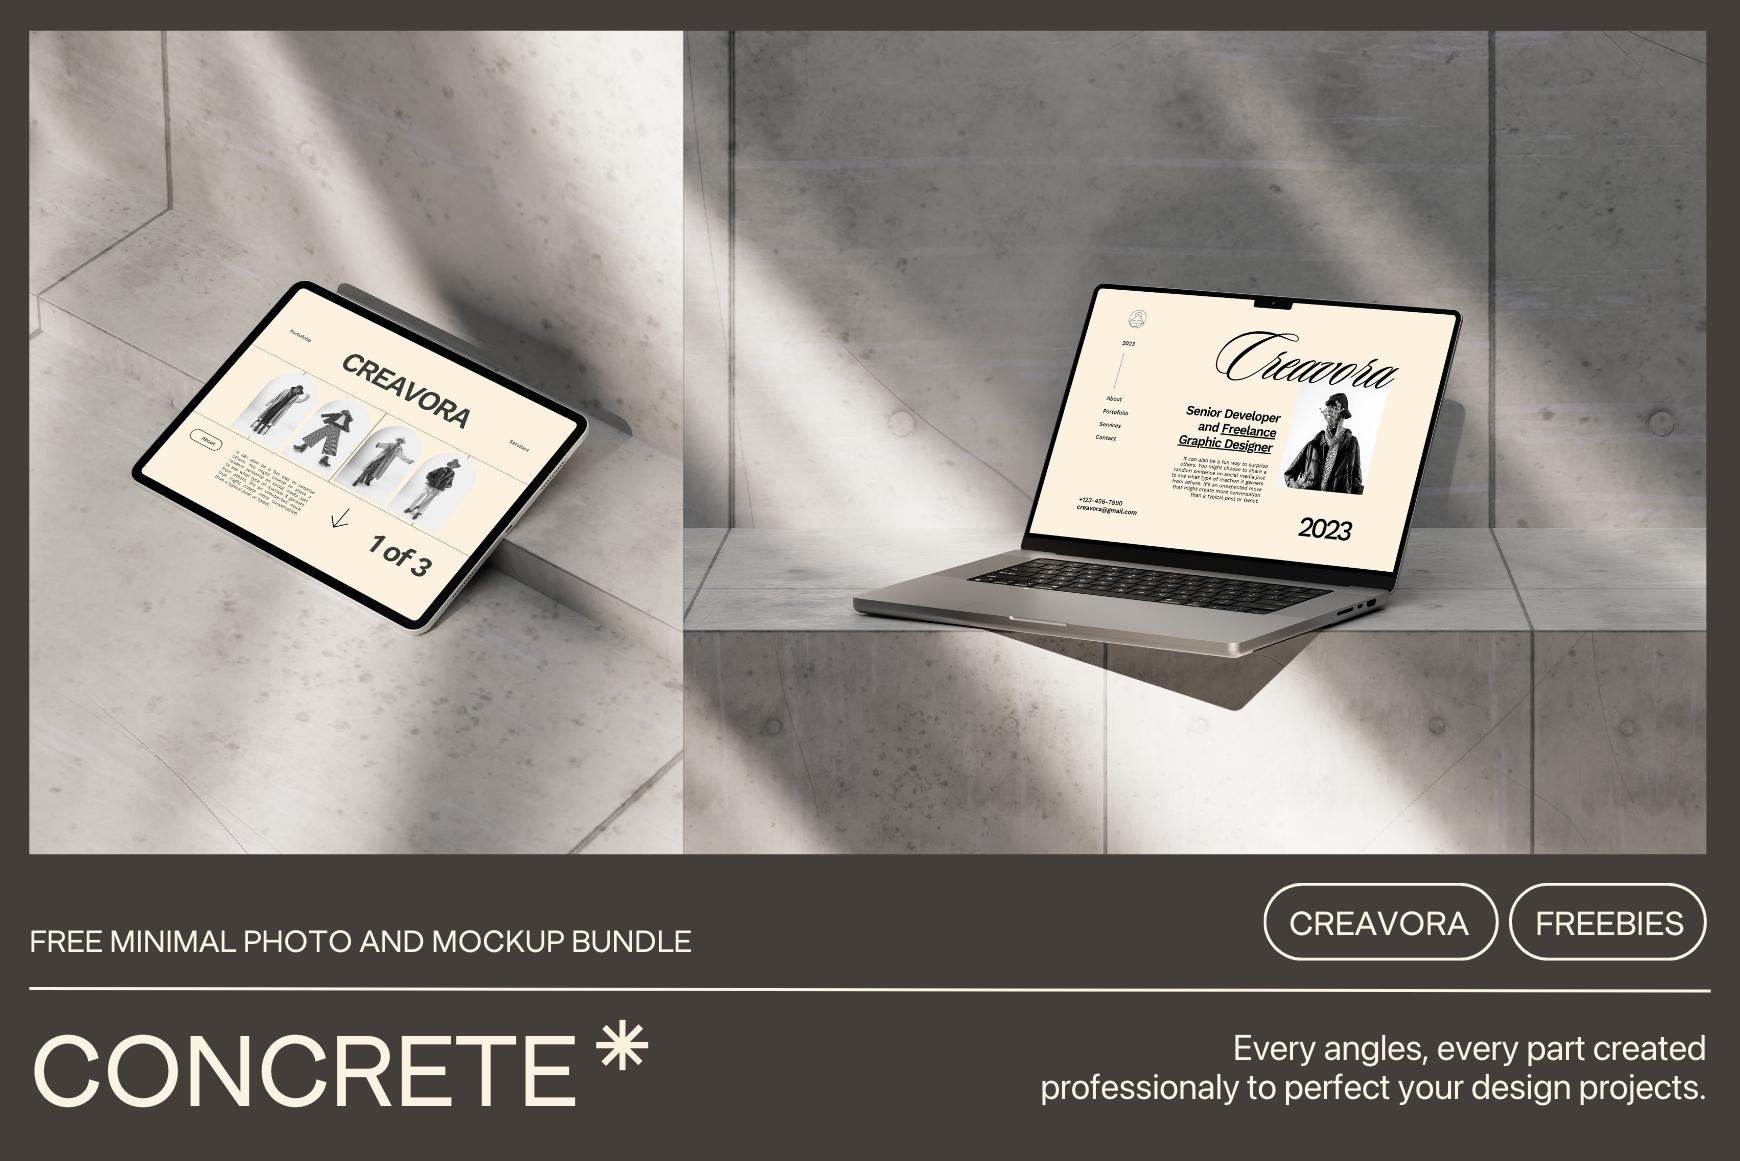 Concrete Free Mockup Bundle by Creavora